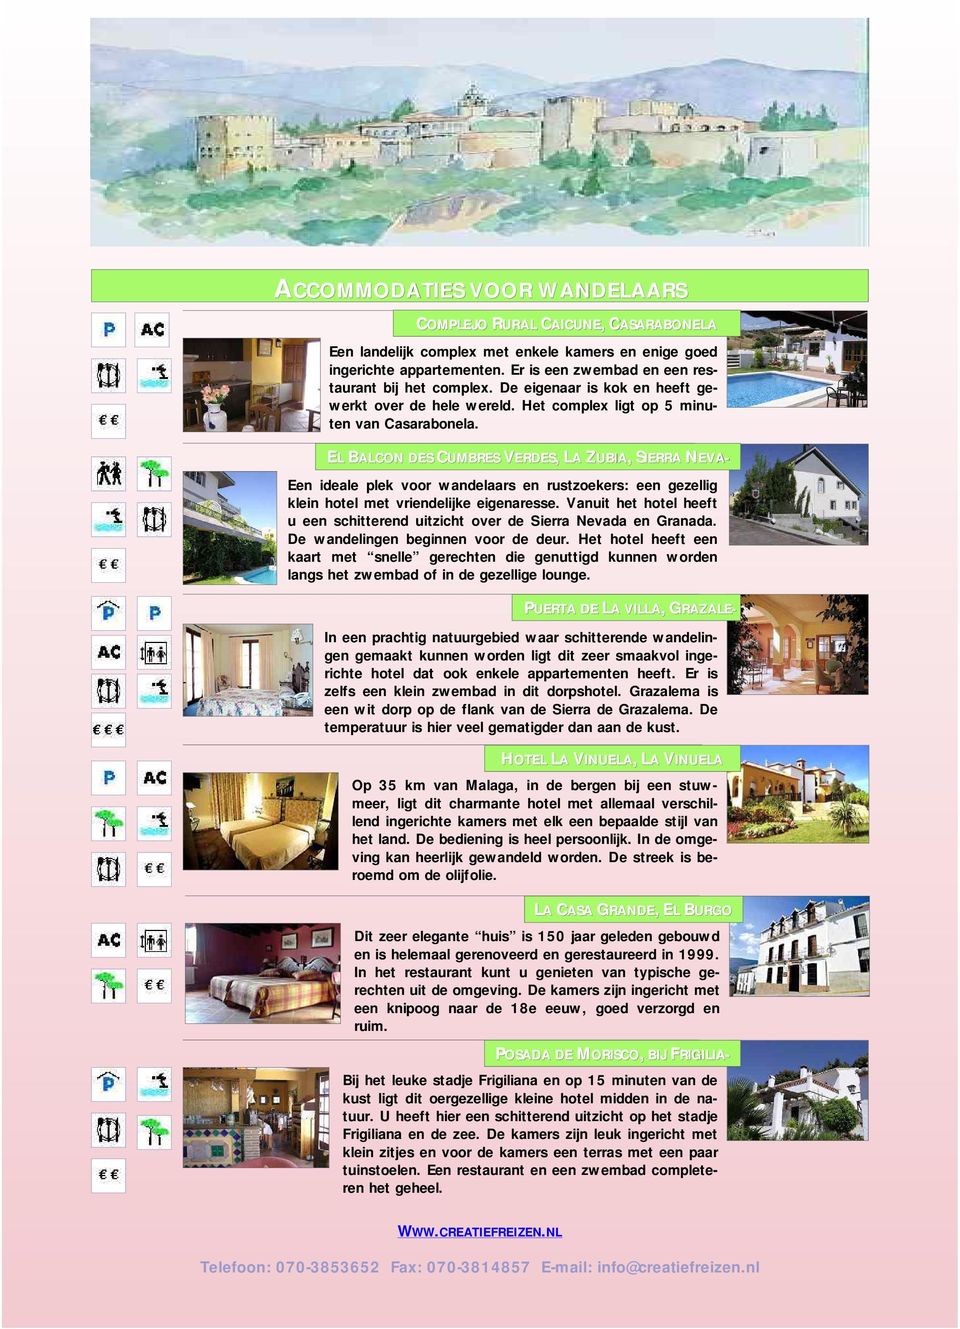 PUERTA DE LA VILLA,, GRAZALG RAZALE- EL BALCON DES CUMBRES VERDES,, LA L ZUBIA,, SIERRAS NEVA- Een ideale plek voor wandelaars en rustzoekers: een gezellig klein hotel met vriendelijke eigenaresse.